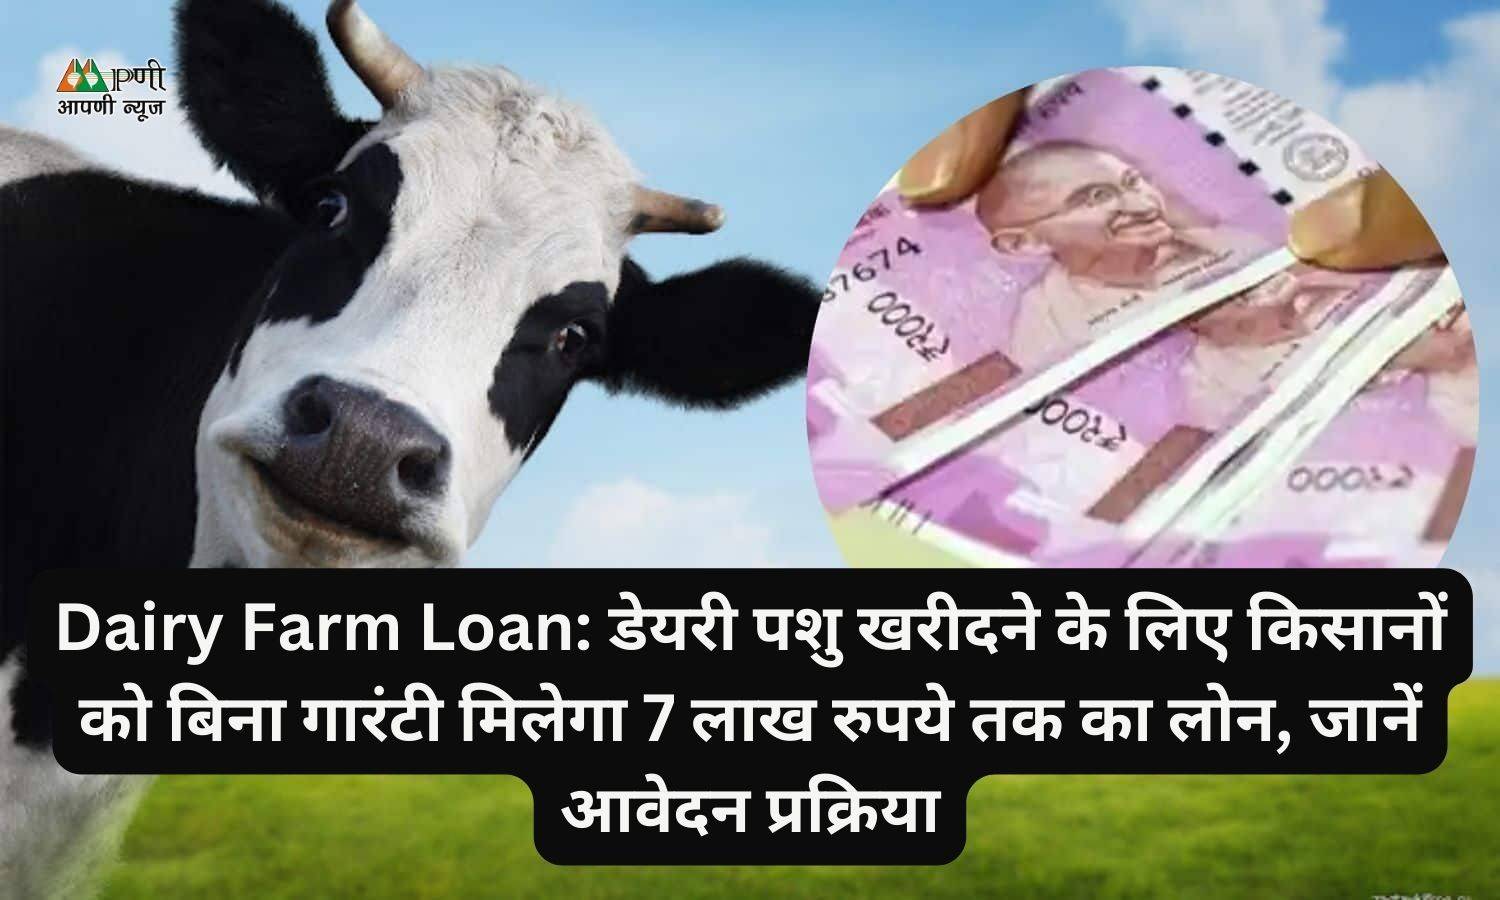 Dairy Farm Loan: डेयरी पशु खरीदने के लिए किसानों को बिना गारंटी मिलेगा 7 लाख रुपये तक का लोन, जानें आवेदन प्रक्रिया